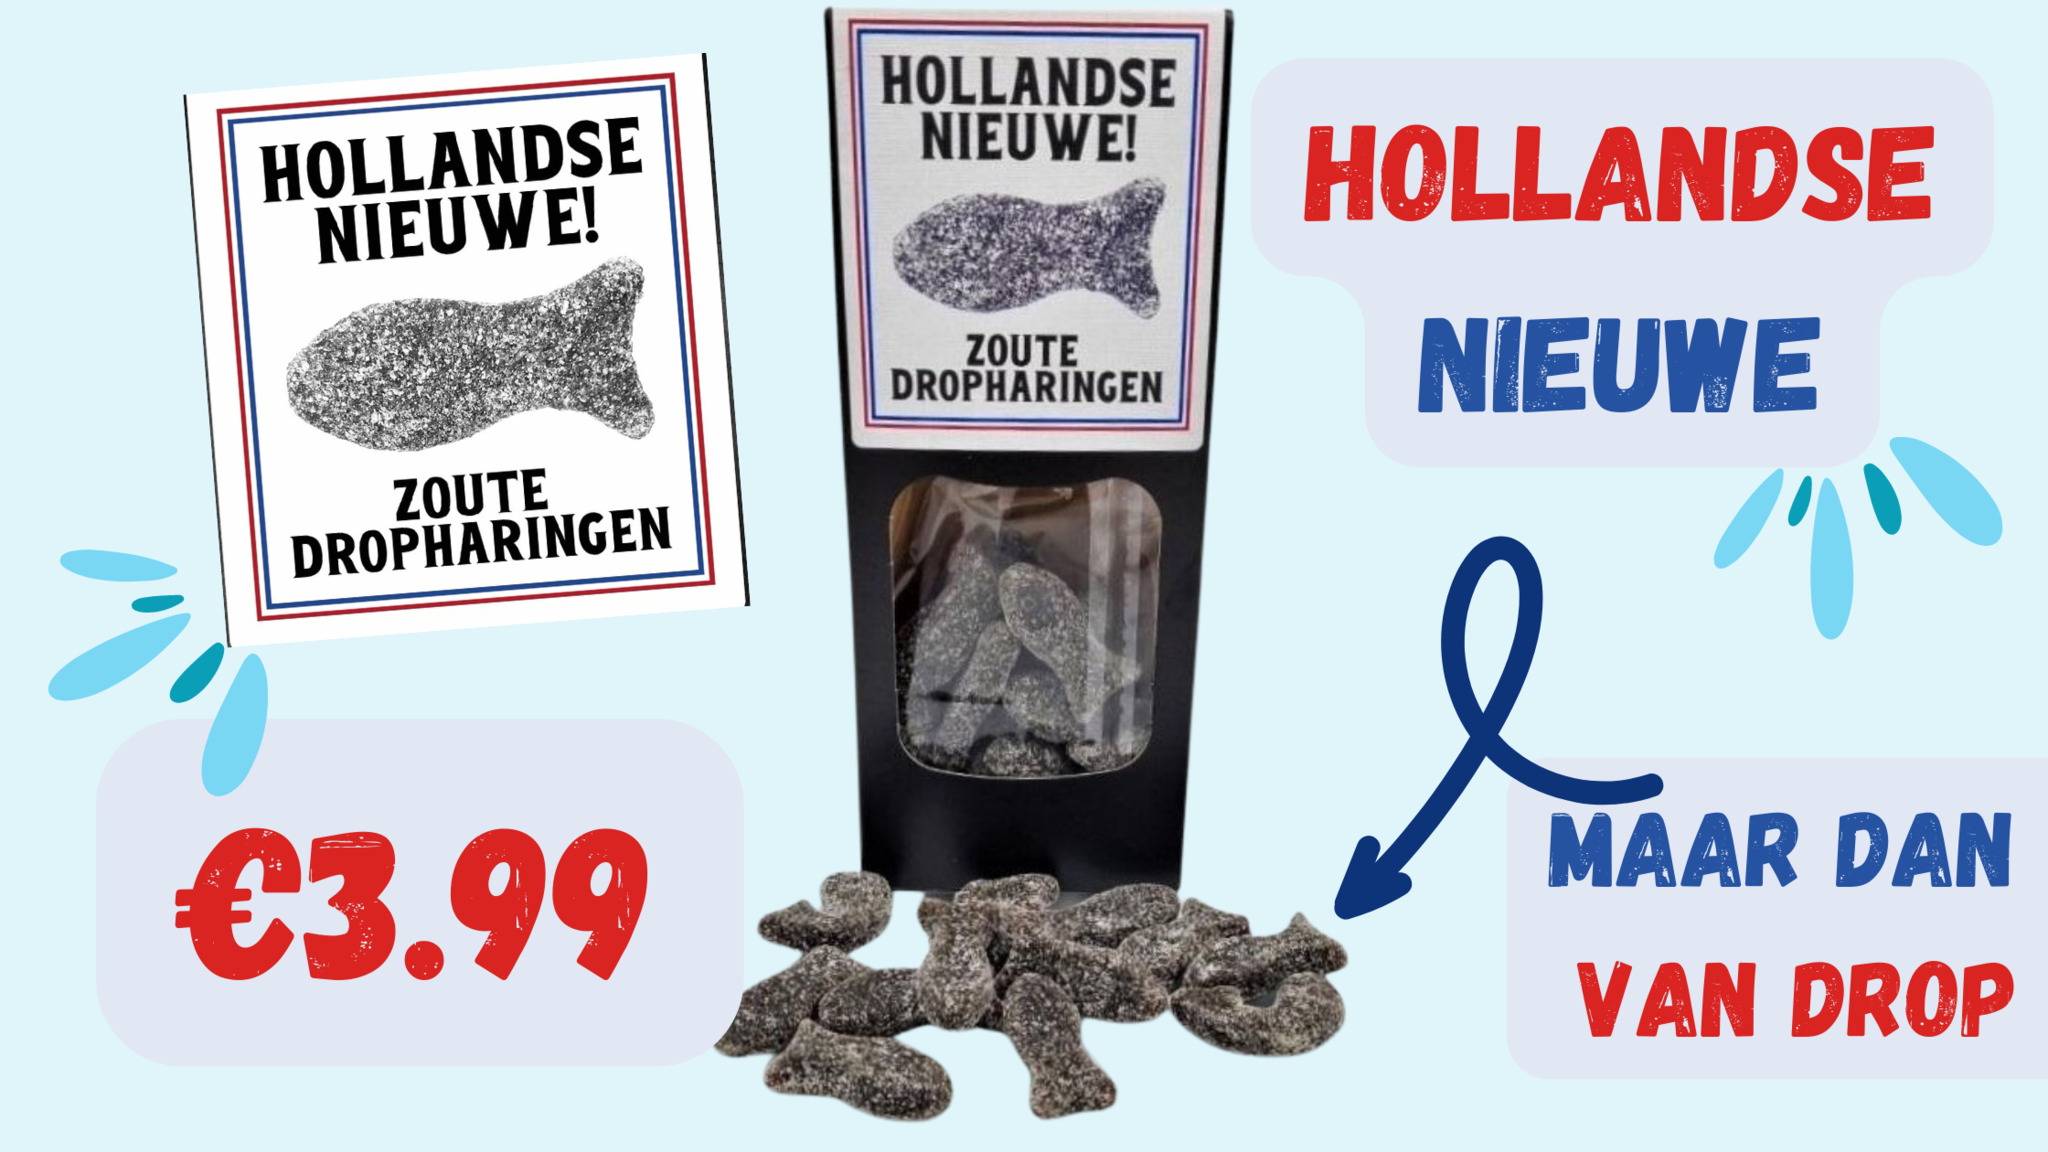 Hollandse Nieuwe!